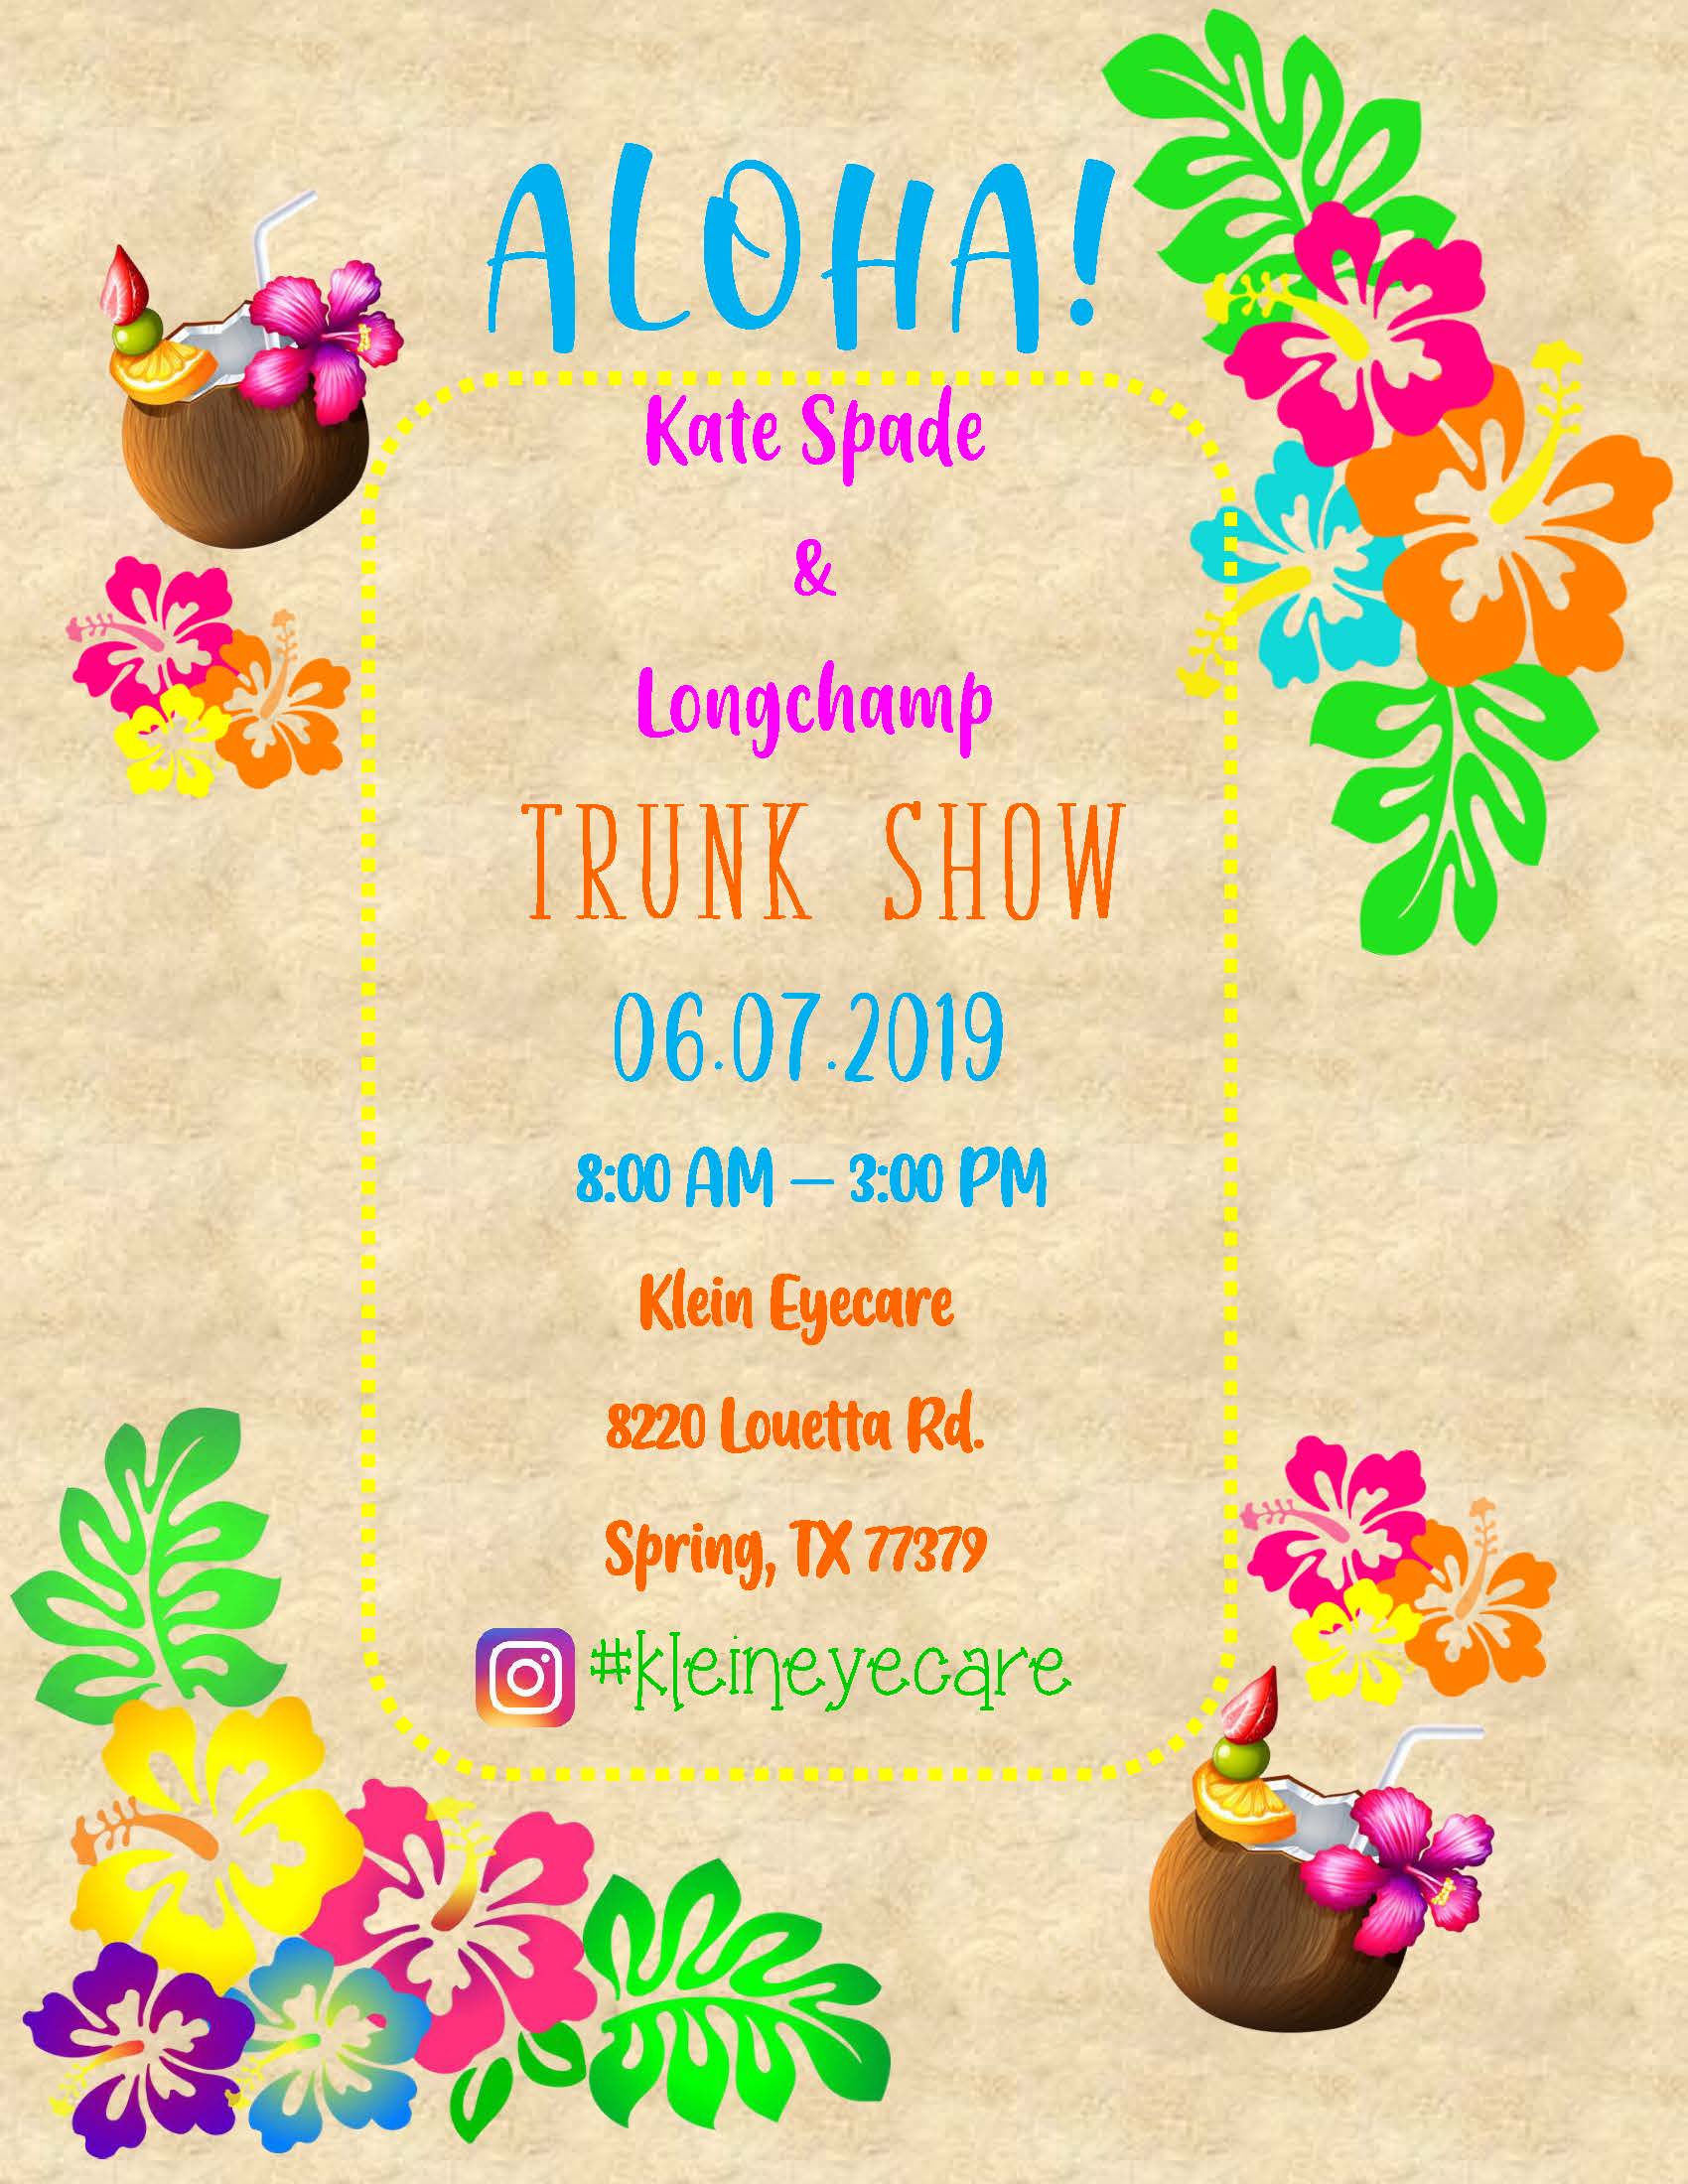 Aloha Trunk Show Flyer 2019